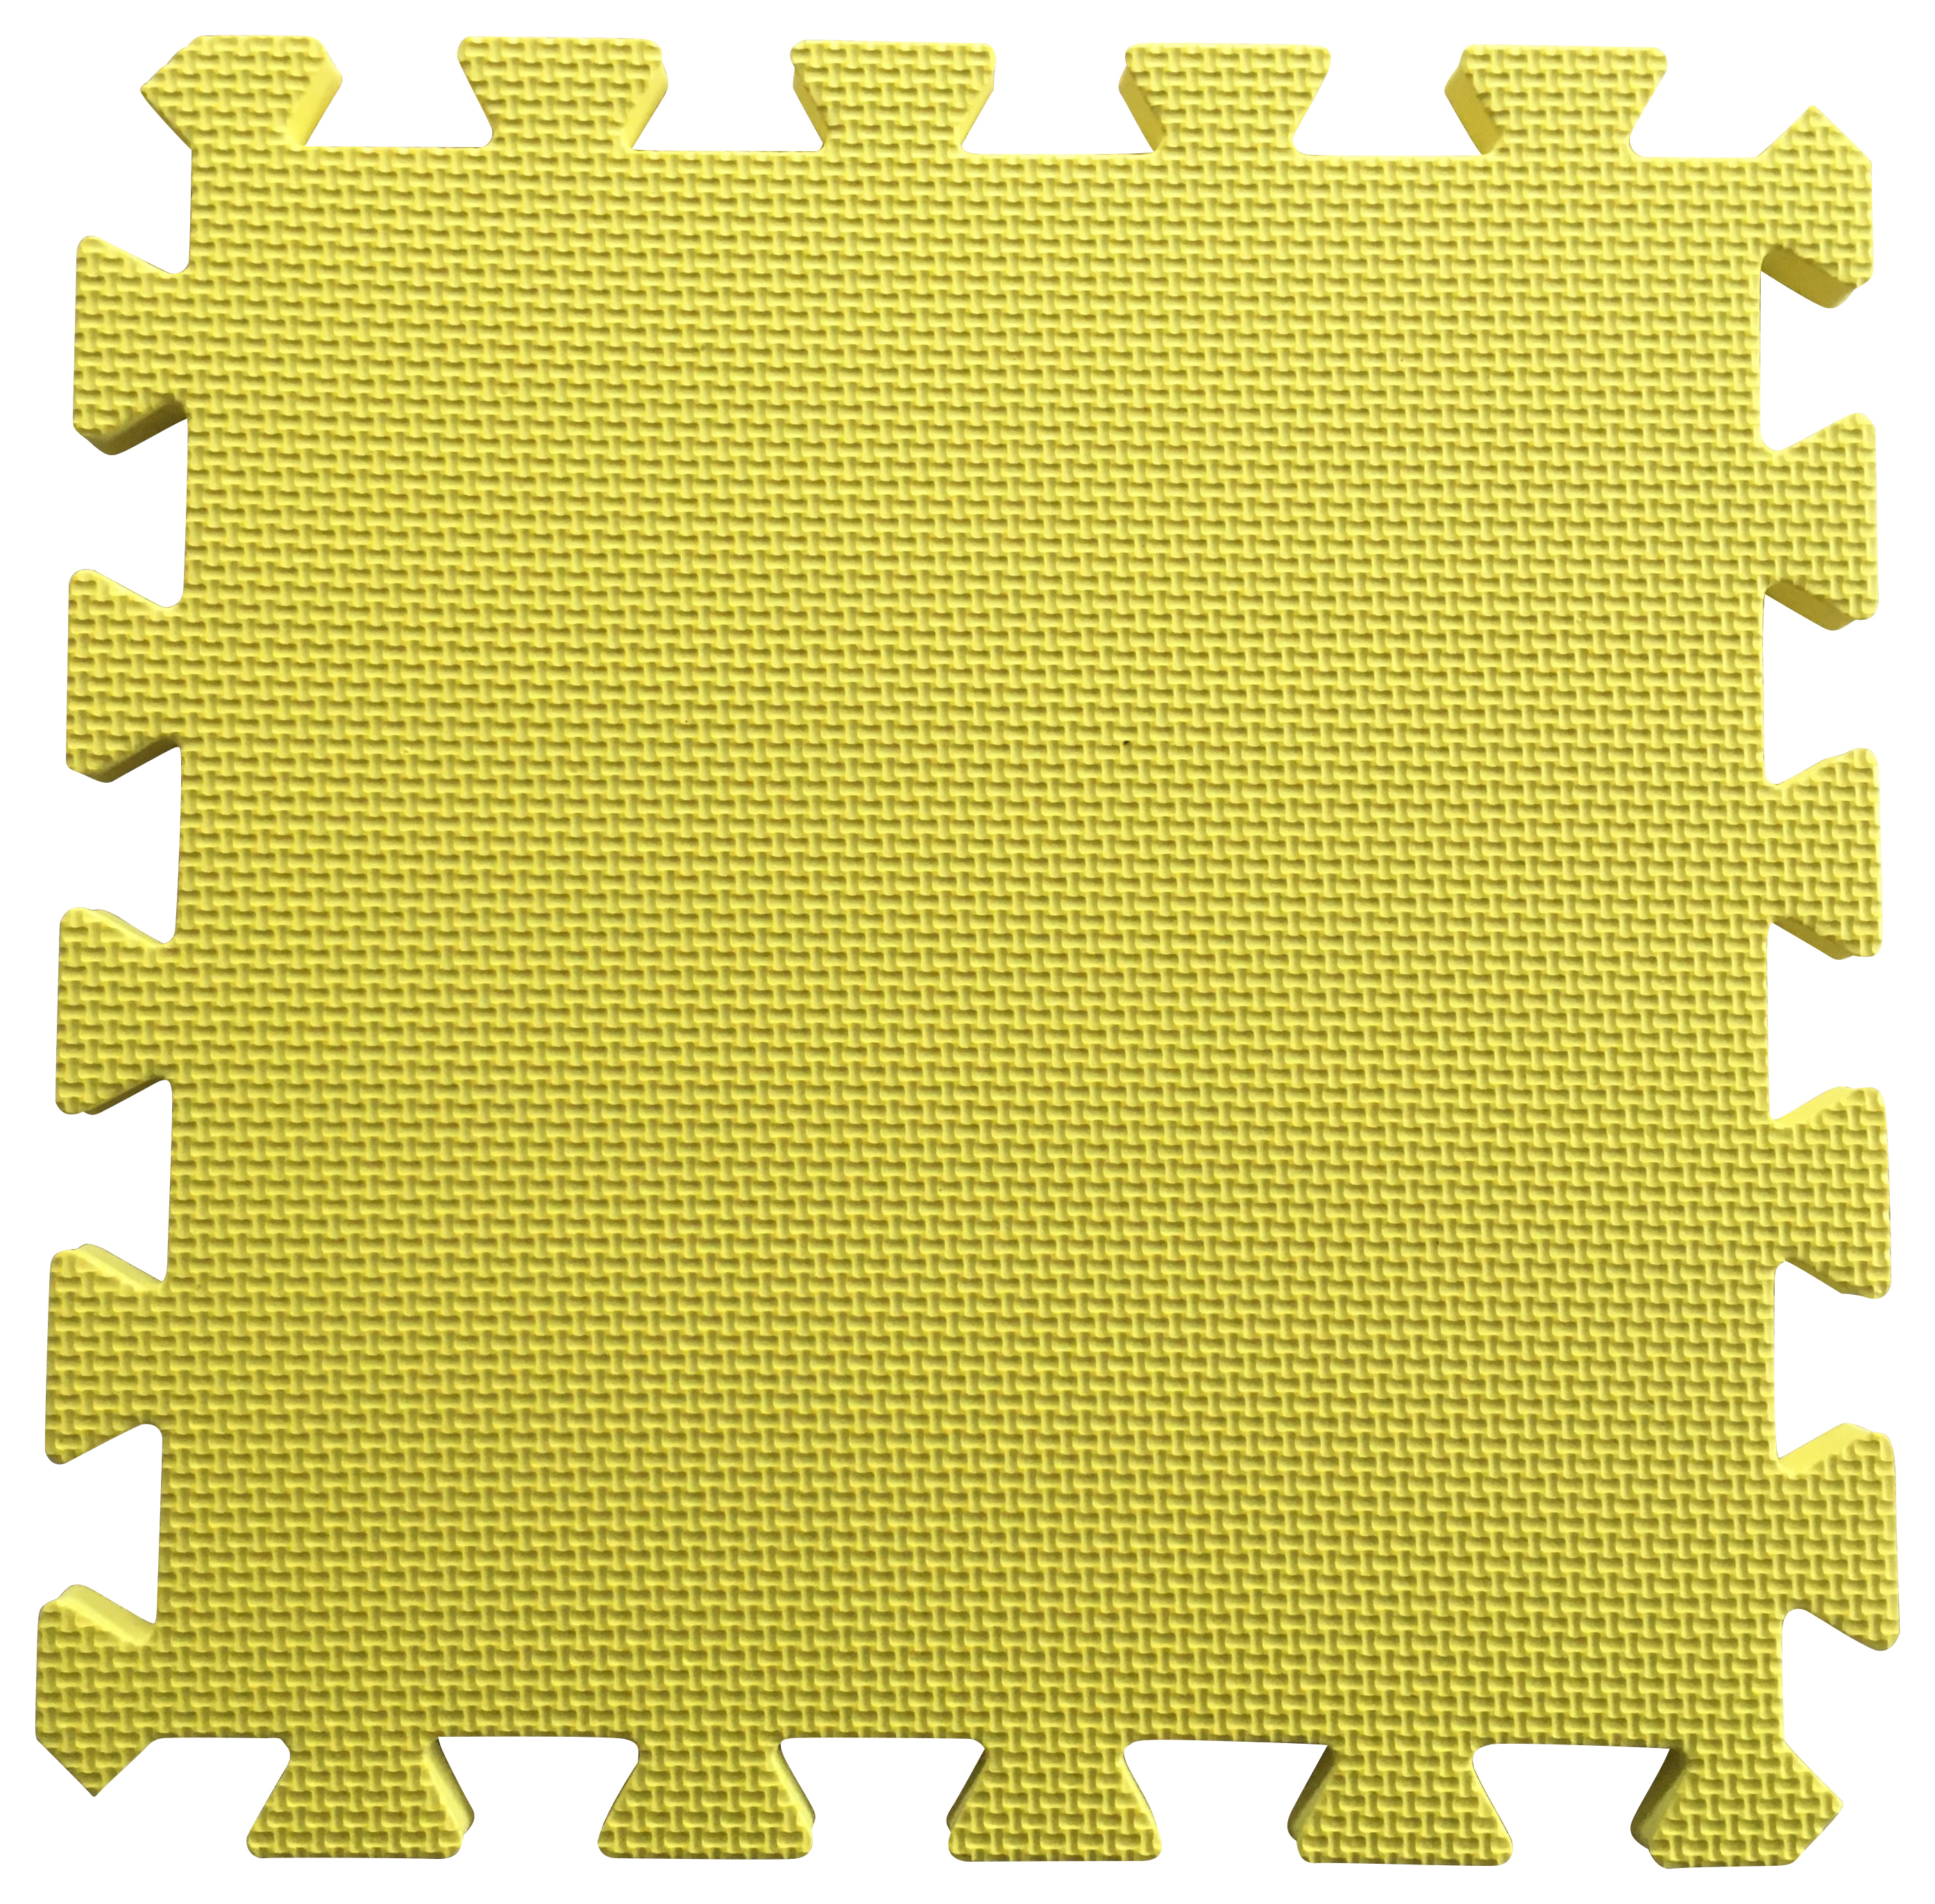 Warm Floor Yellow Interlocking Floor Tiles for Garden Buildings - 4 x 8ft